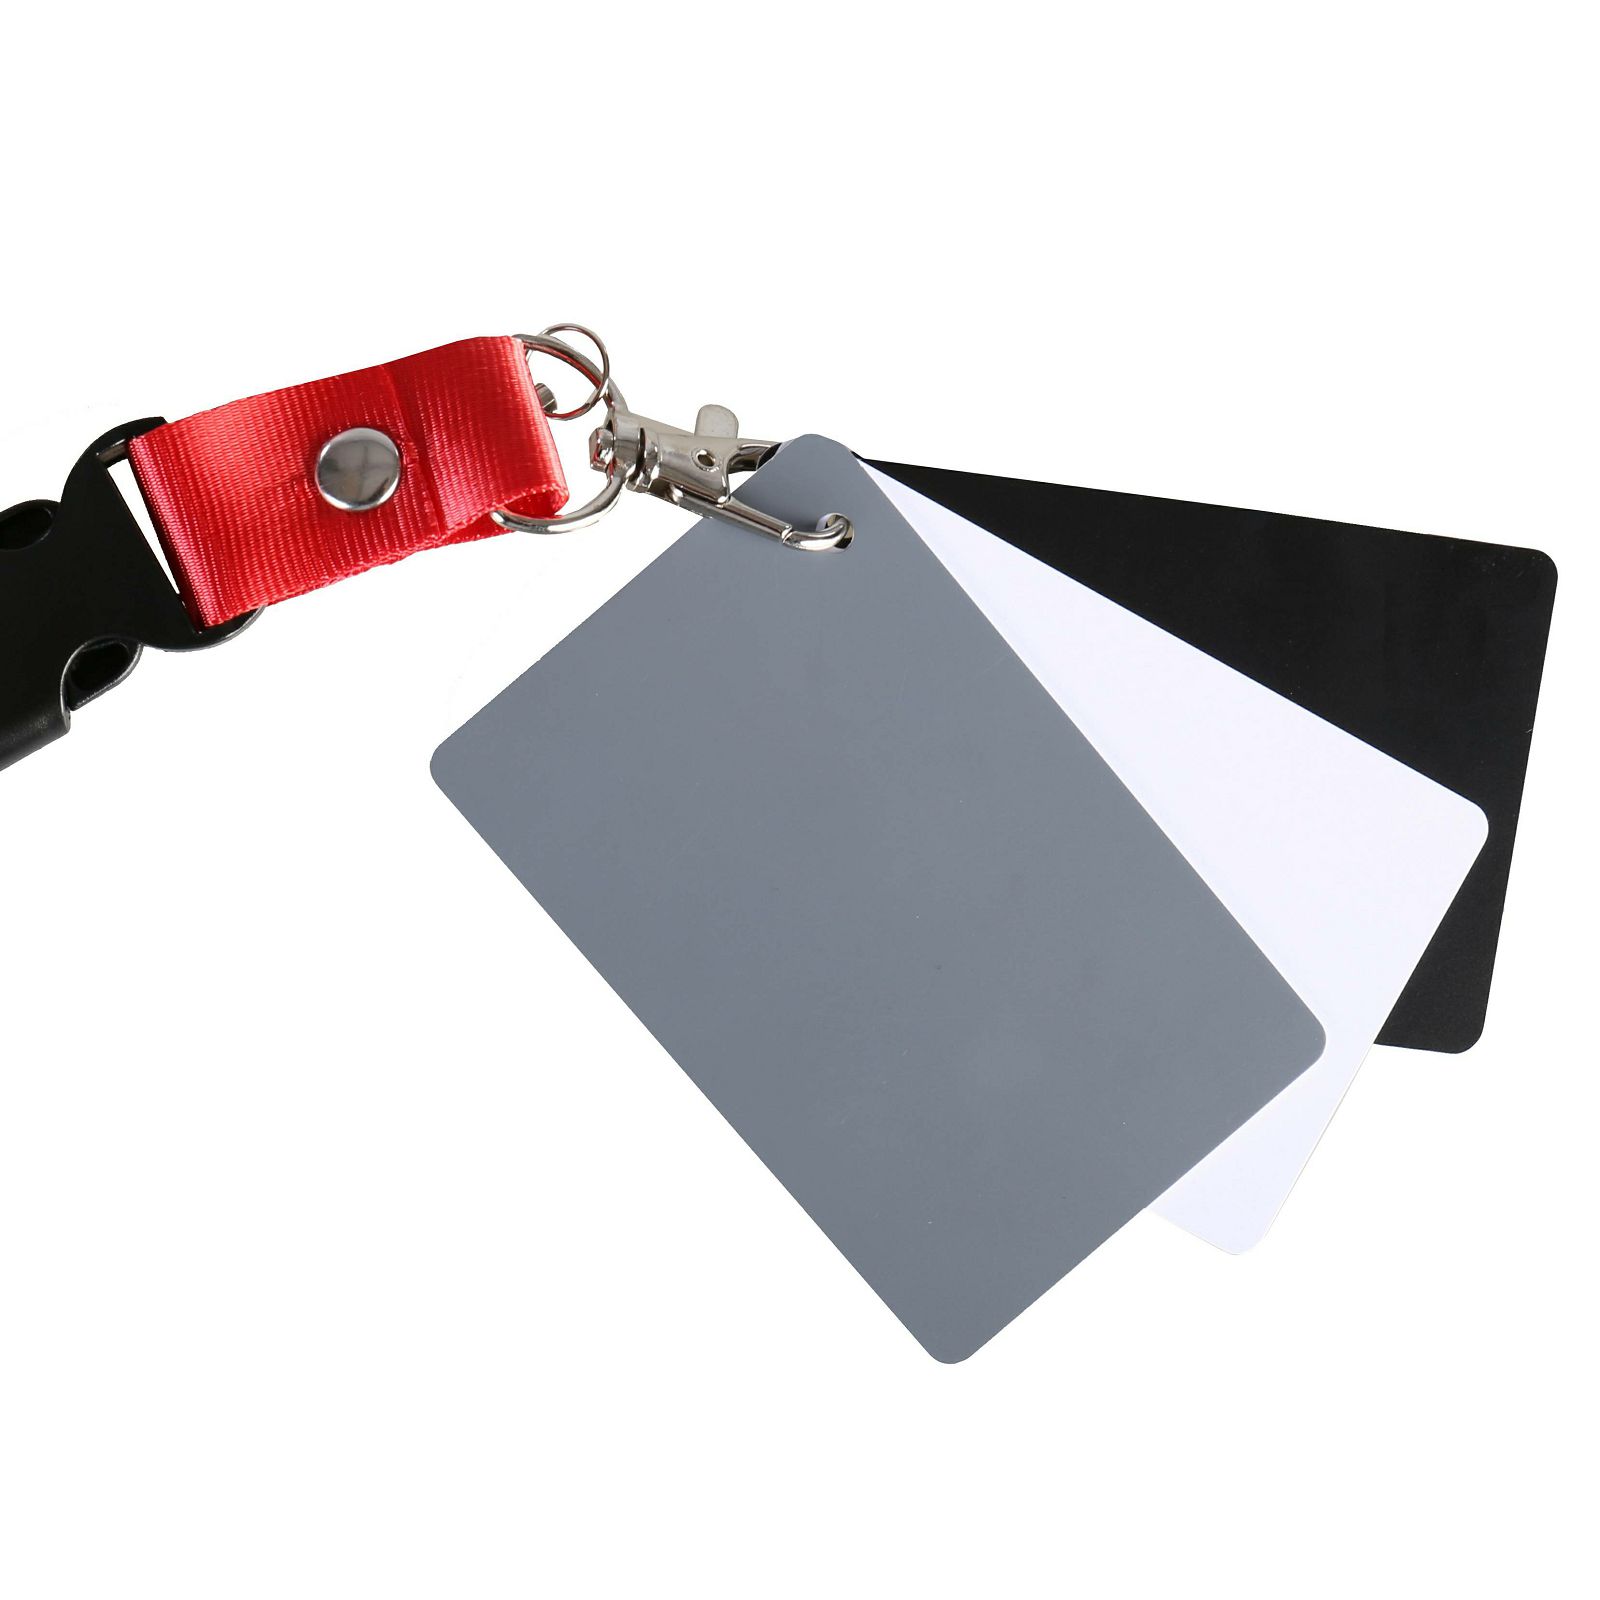 Micnova Digital Grey Card MQ-DGC-M siva karta za podešavanje balansa bijele boje